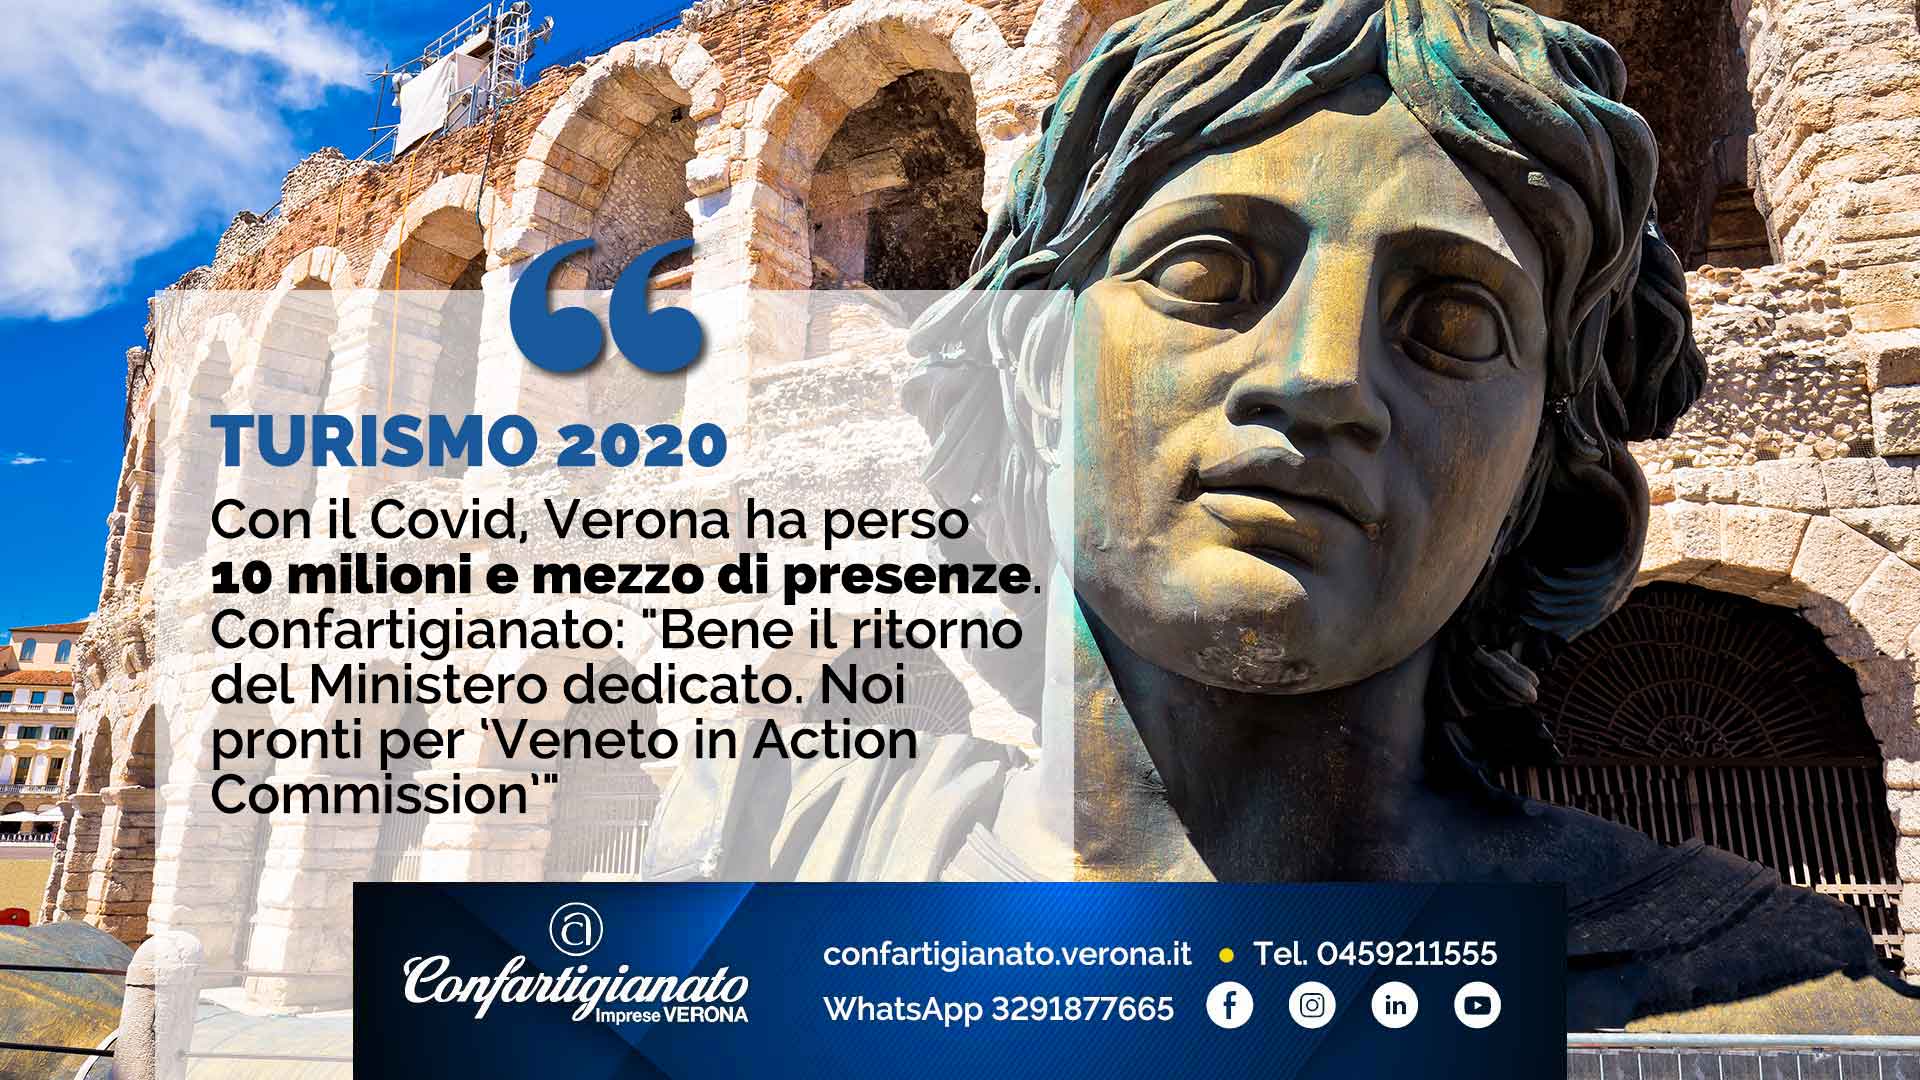 TURISMO 2020 – Con il Covid, Verona ha perso 10 milioni e mezzo di presenze. Confartigianato: "Bene il ritorno del Ministero dedicato"